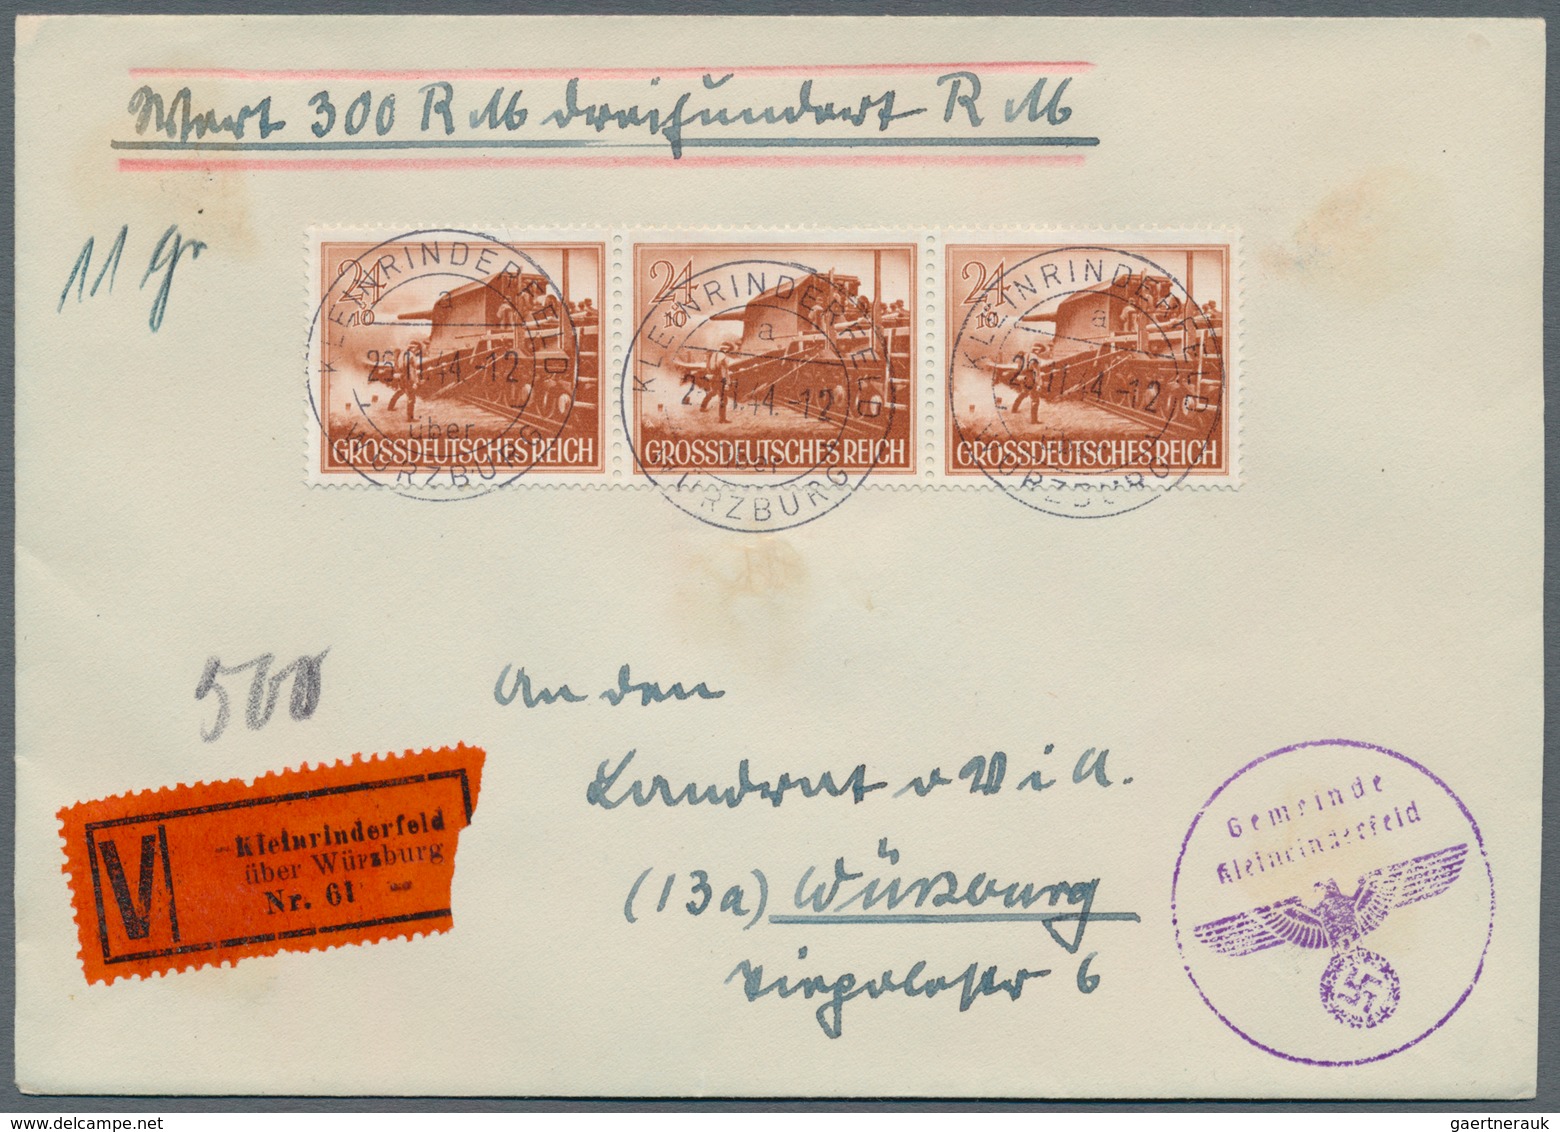 Deutsches Reich - 3. Reich: 1944, Partie von neun Wertbriefen mit exakt portogerechten Mehrfachfrank